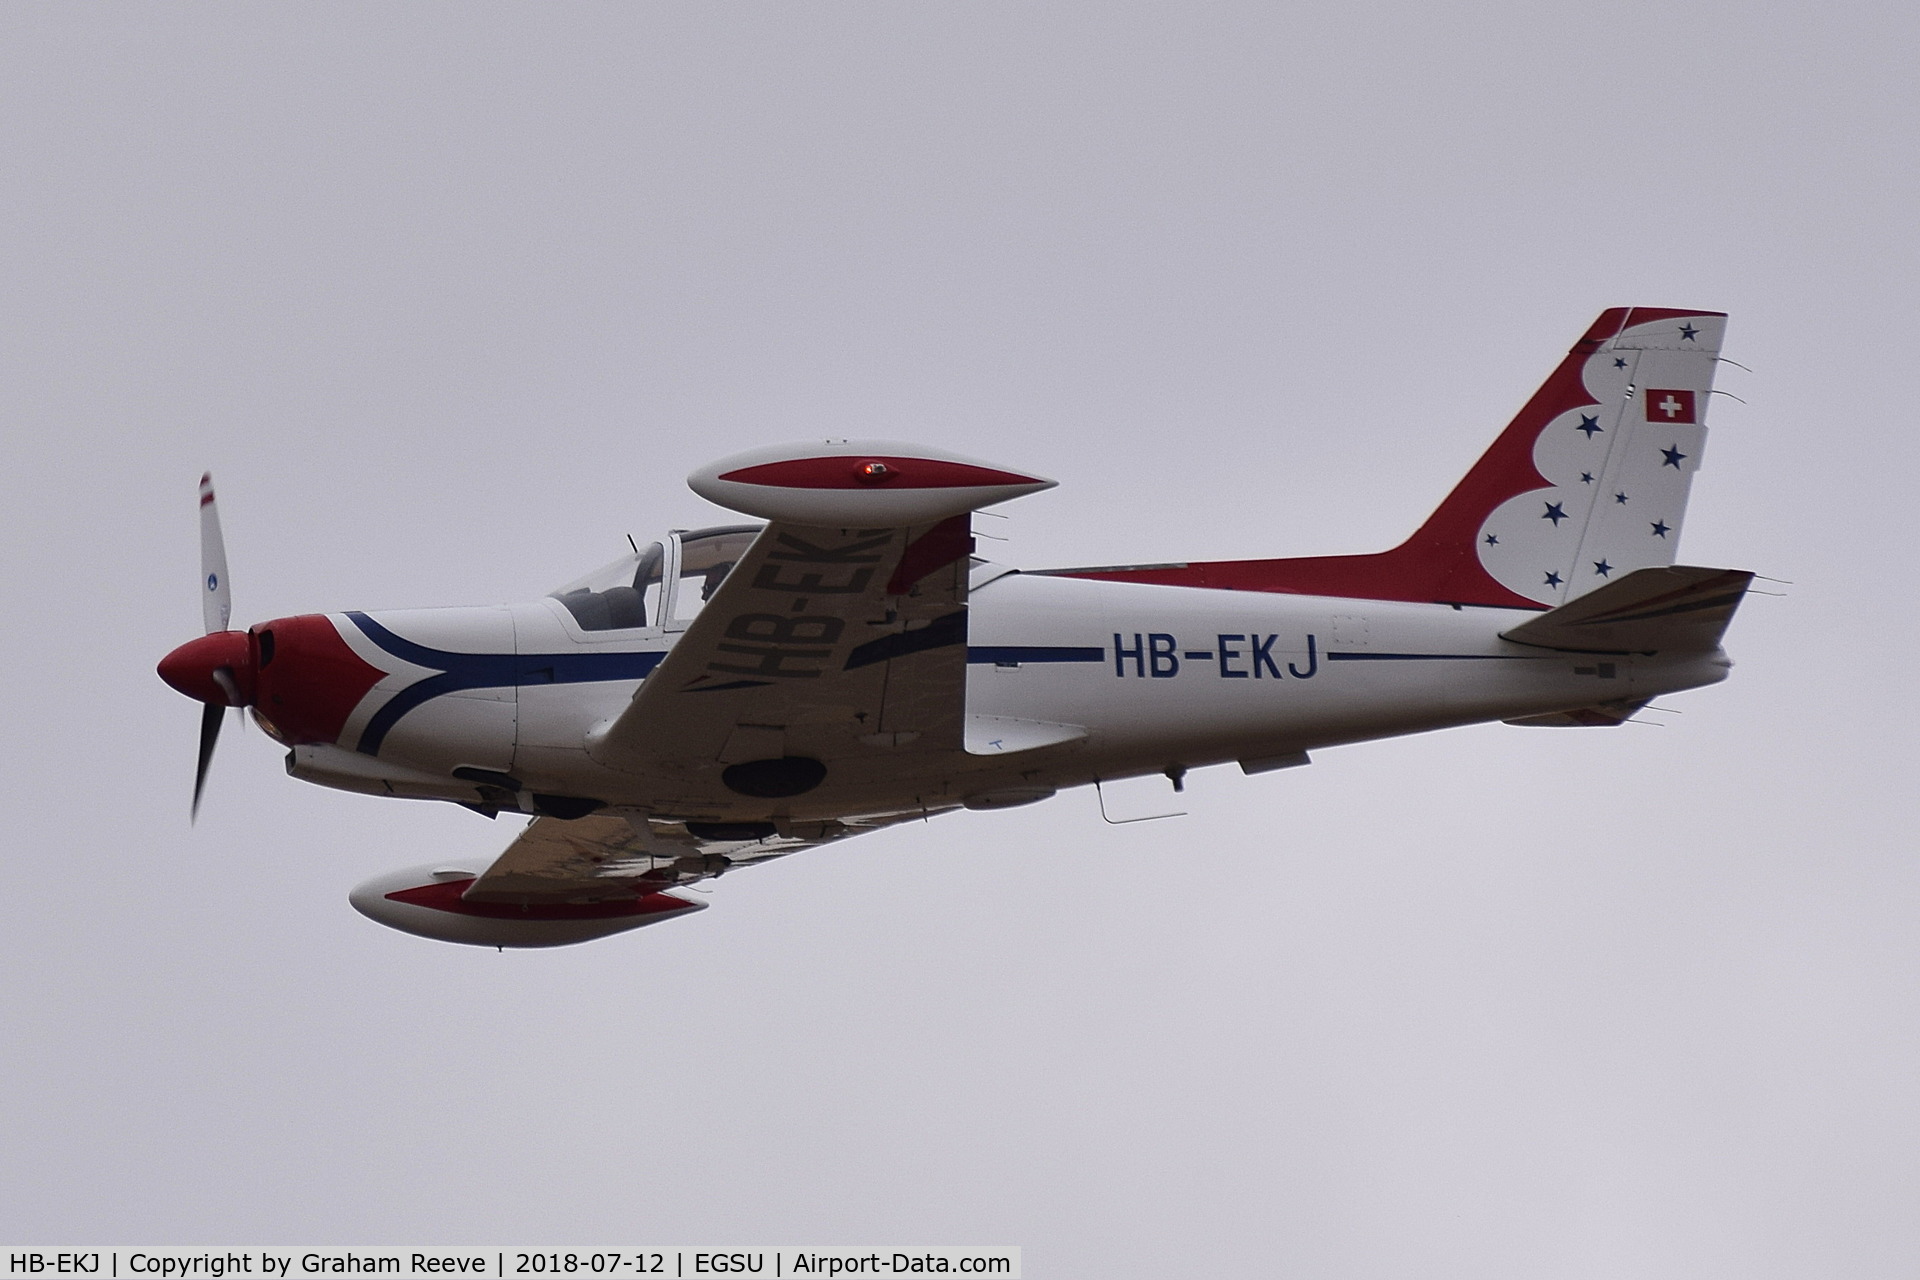 HB-EKJ, 1986 SIAI-Marchetti F-260D C/N 735/41-005, Over head at Duxford.